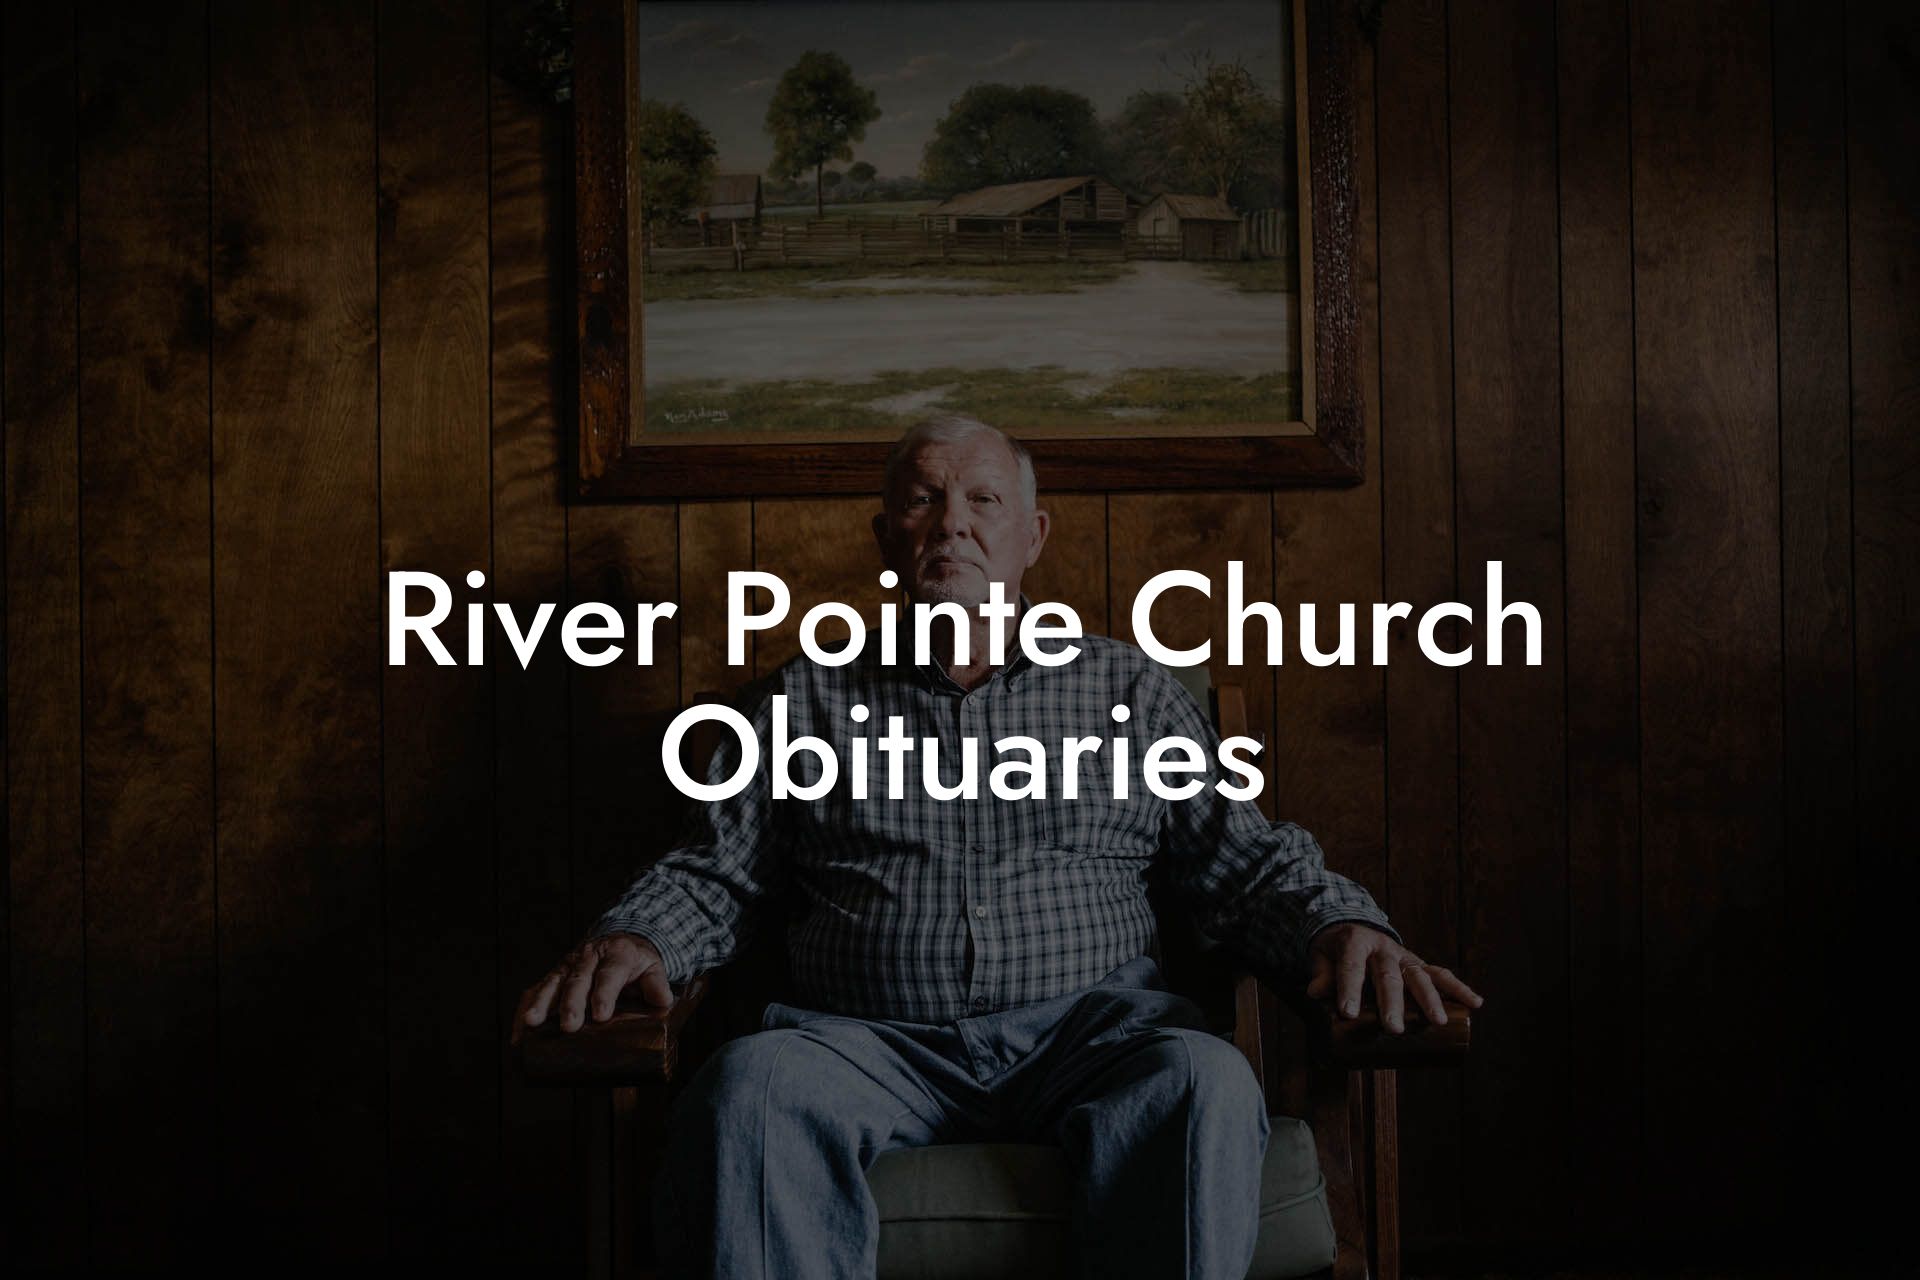 River Pointe Church Obituaries